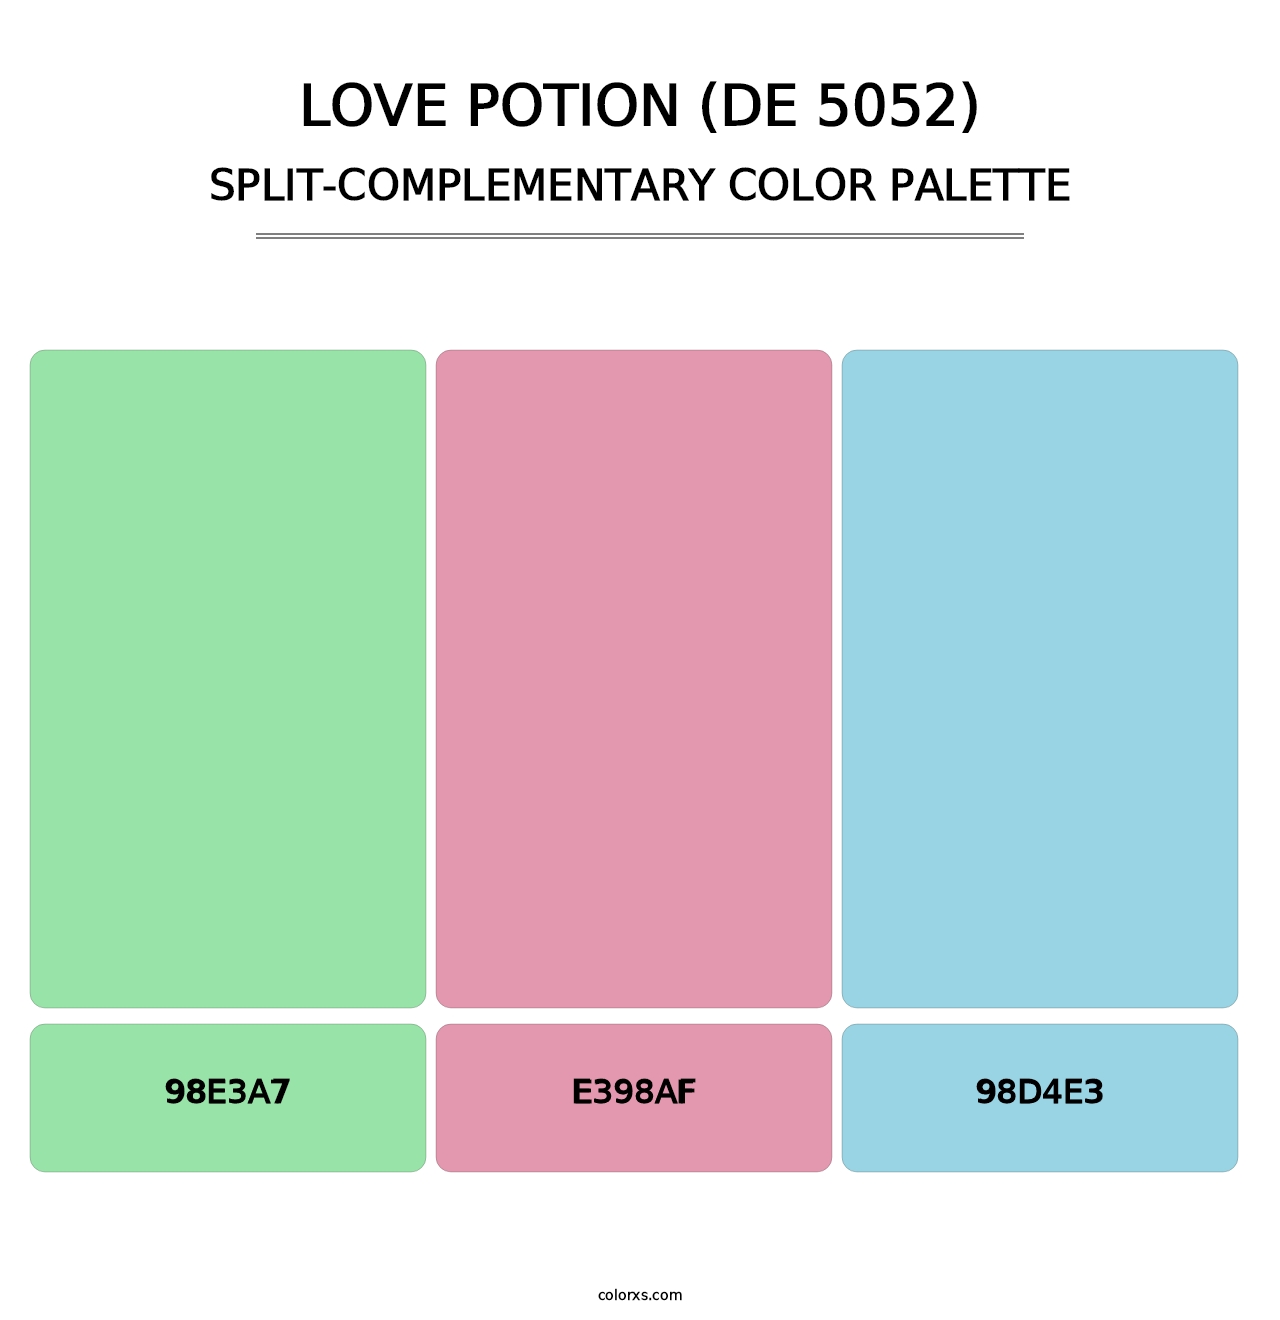 Love Potion (DE 5052) - Split-Complementary Color Palette